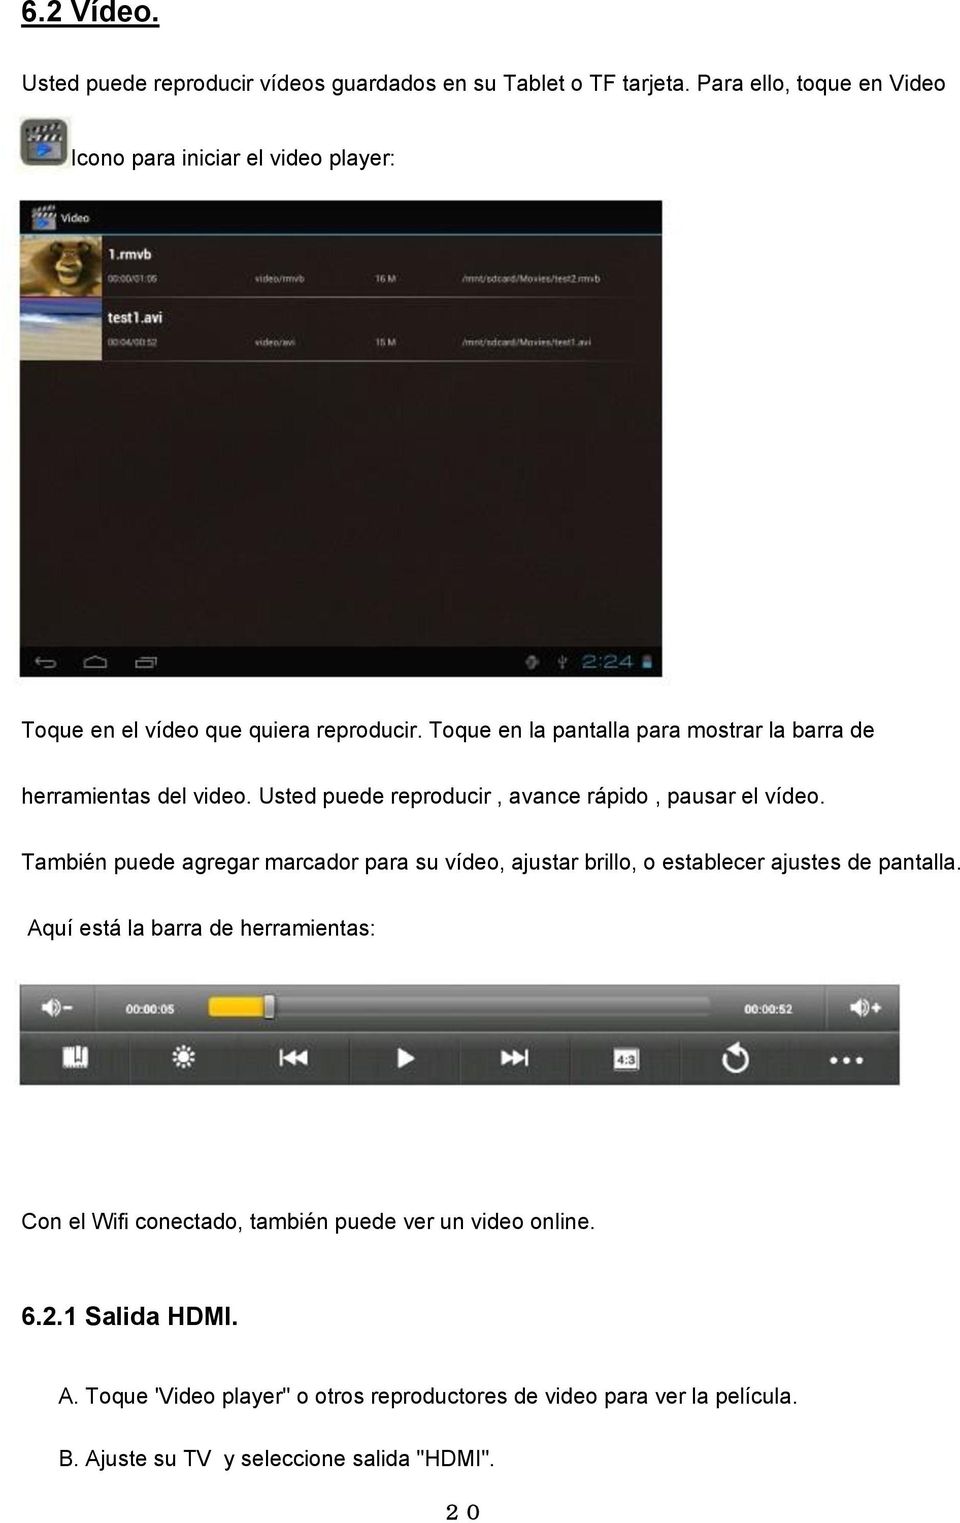 Toque en la pantalla para mostrar la barra de herramientas del video. Usted puede reproducir, avance rápido, pausar el vídeo.